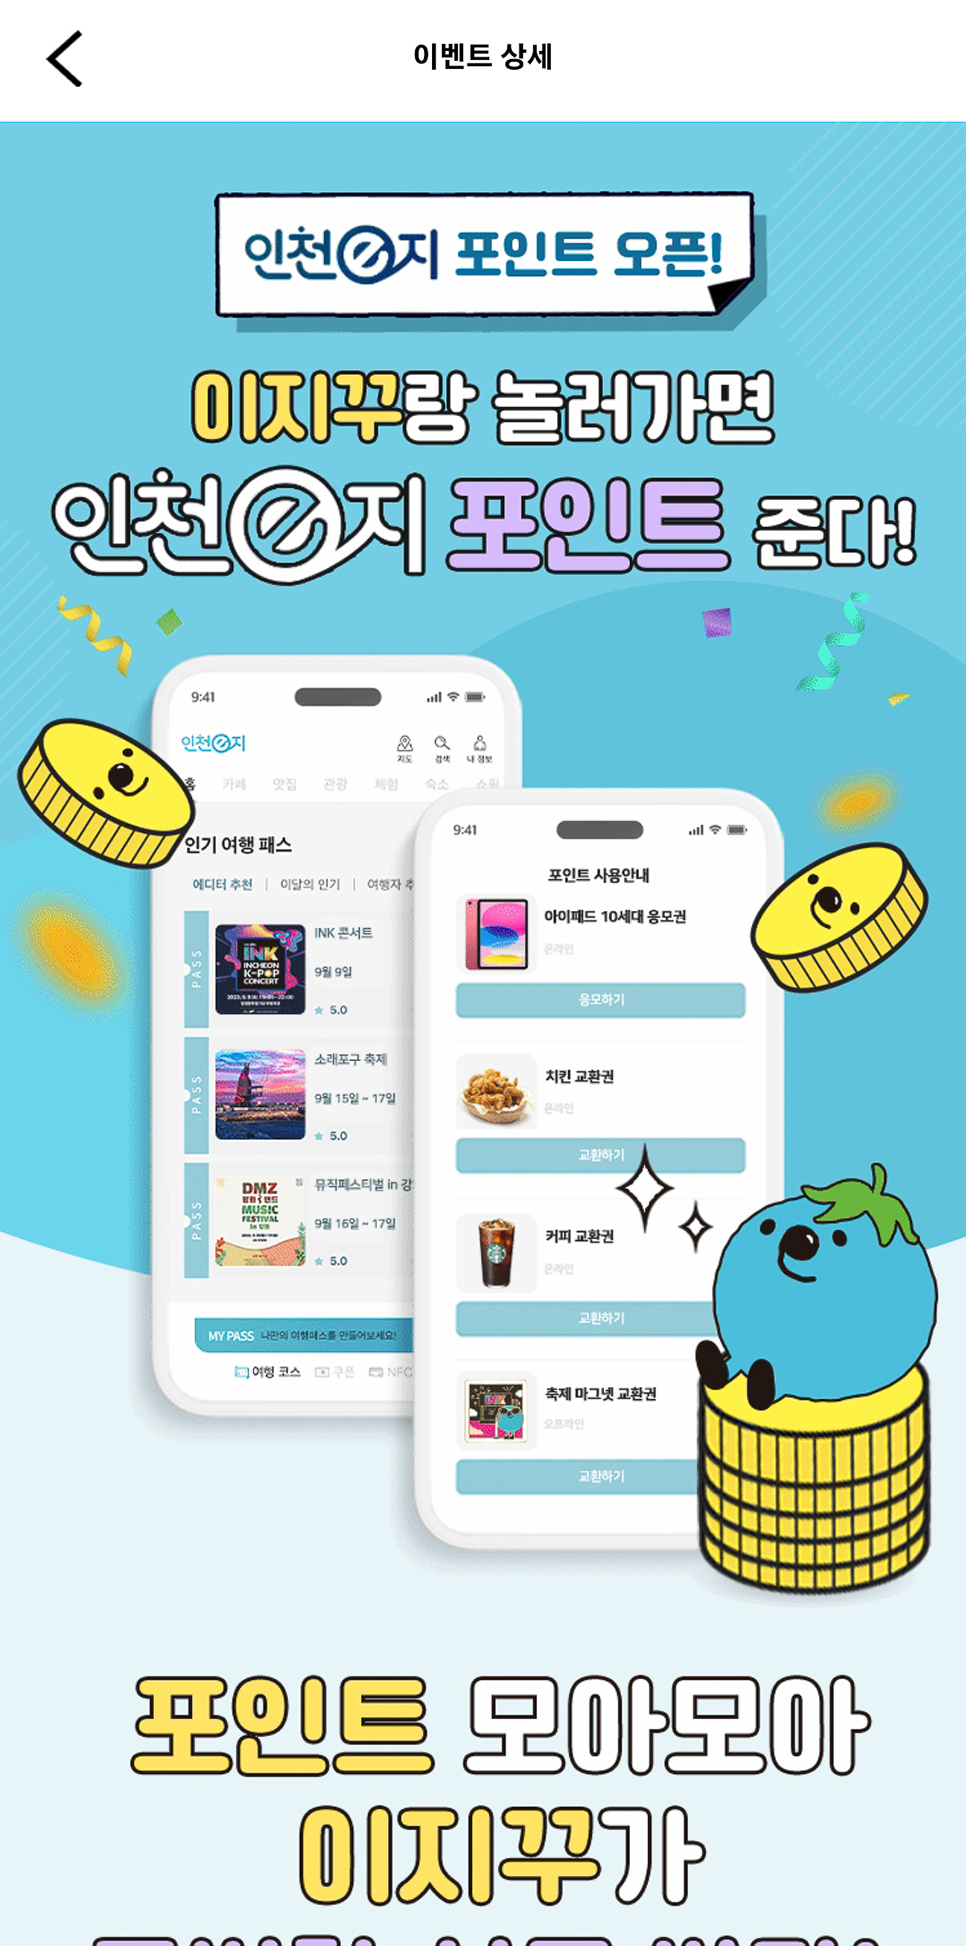 인천 놀만한곳 볼거리 미디어아트 축제 < 빛의 정원, 송도 > 인천e지 앱으로 스탬프투어 즐기기